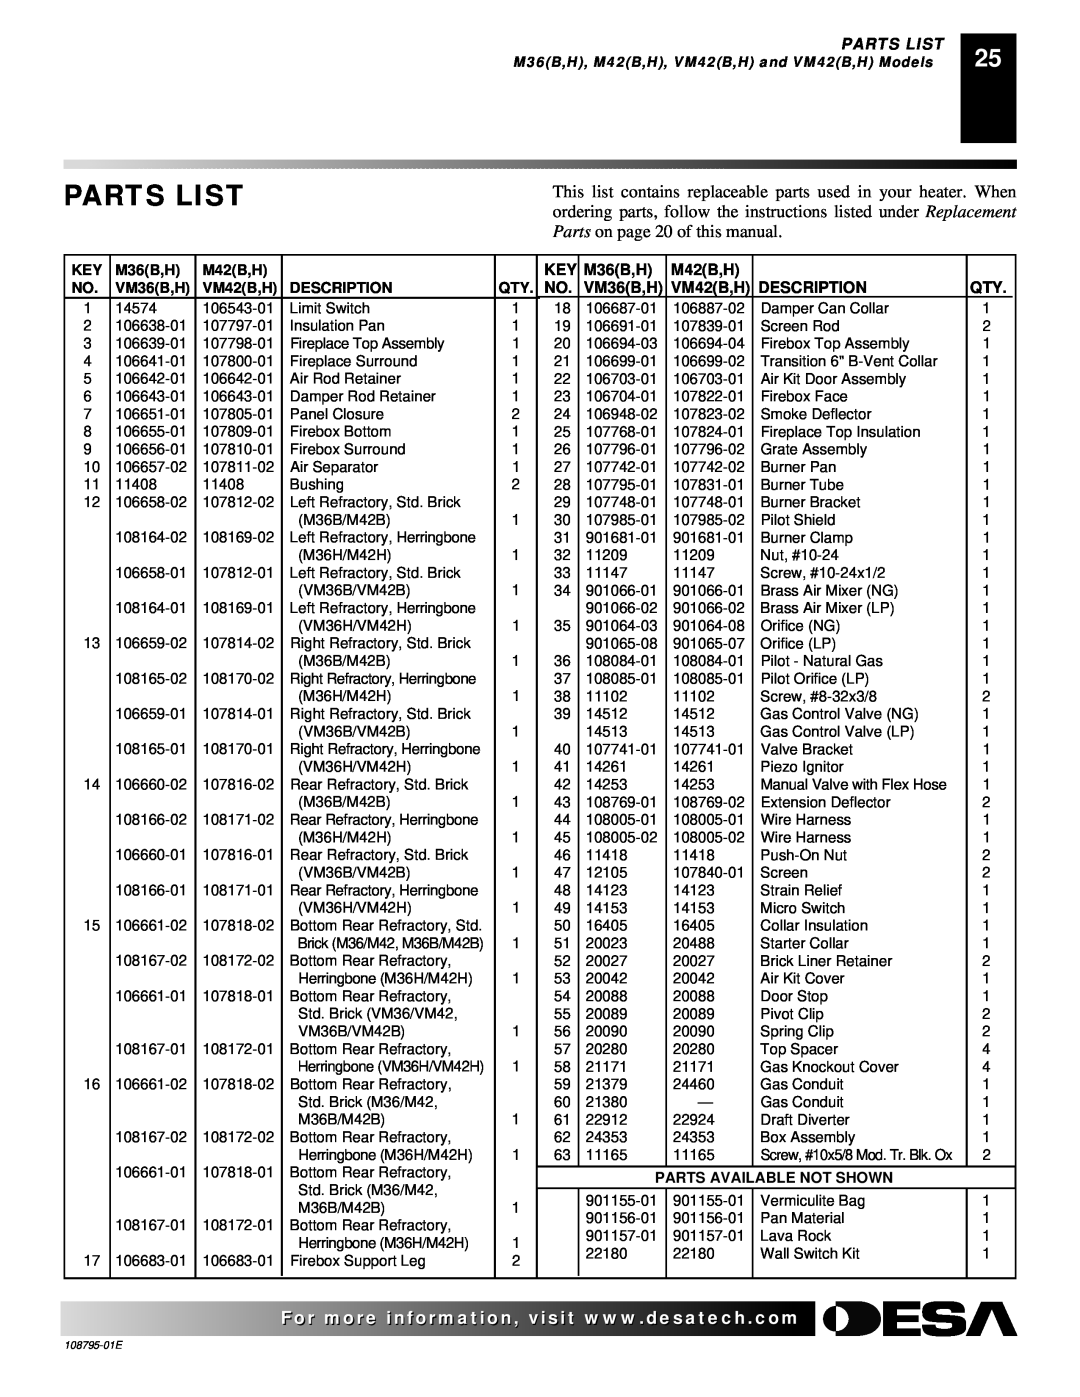 Desa installation manual Parts List, VM36B,H, Description, M36B,H, M42B,H, VM42B,H and VM42B,H Models 